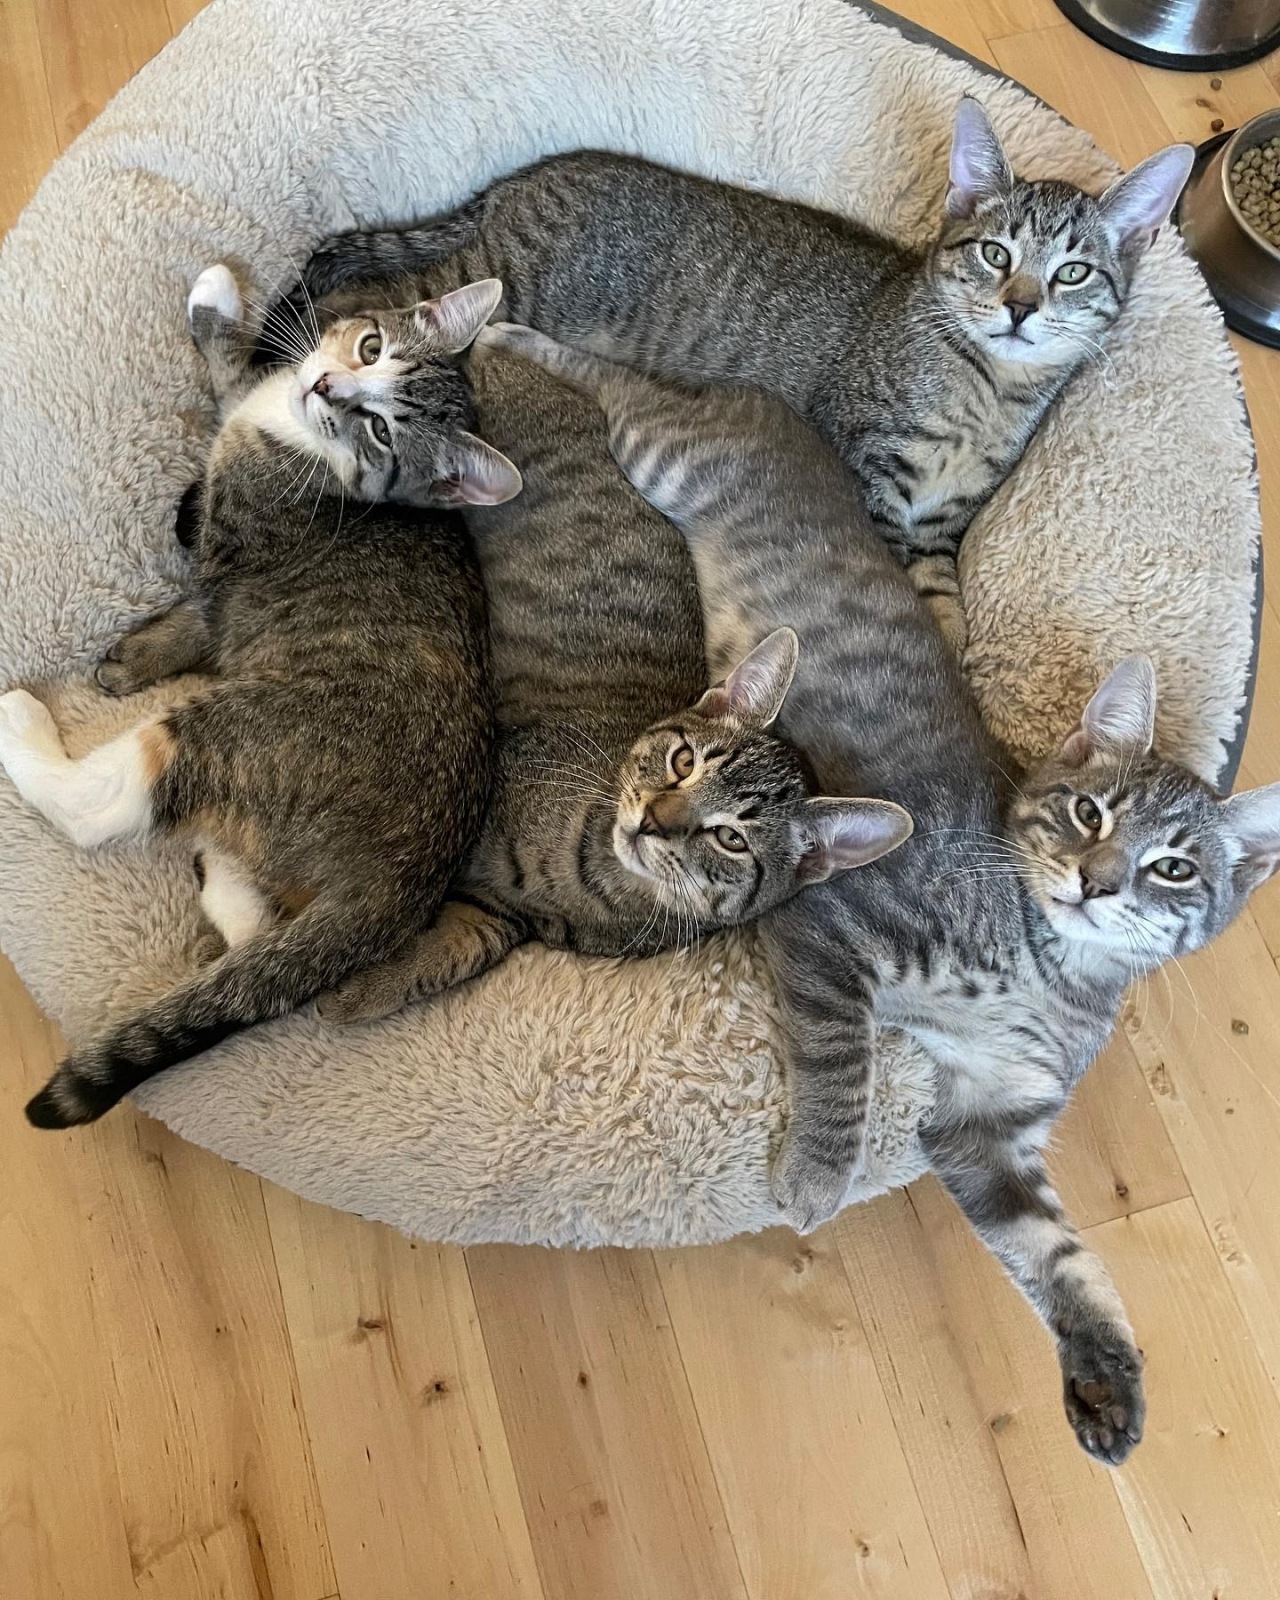 Uomo adotta una famiglia di gatti